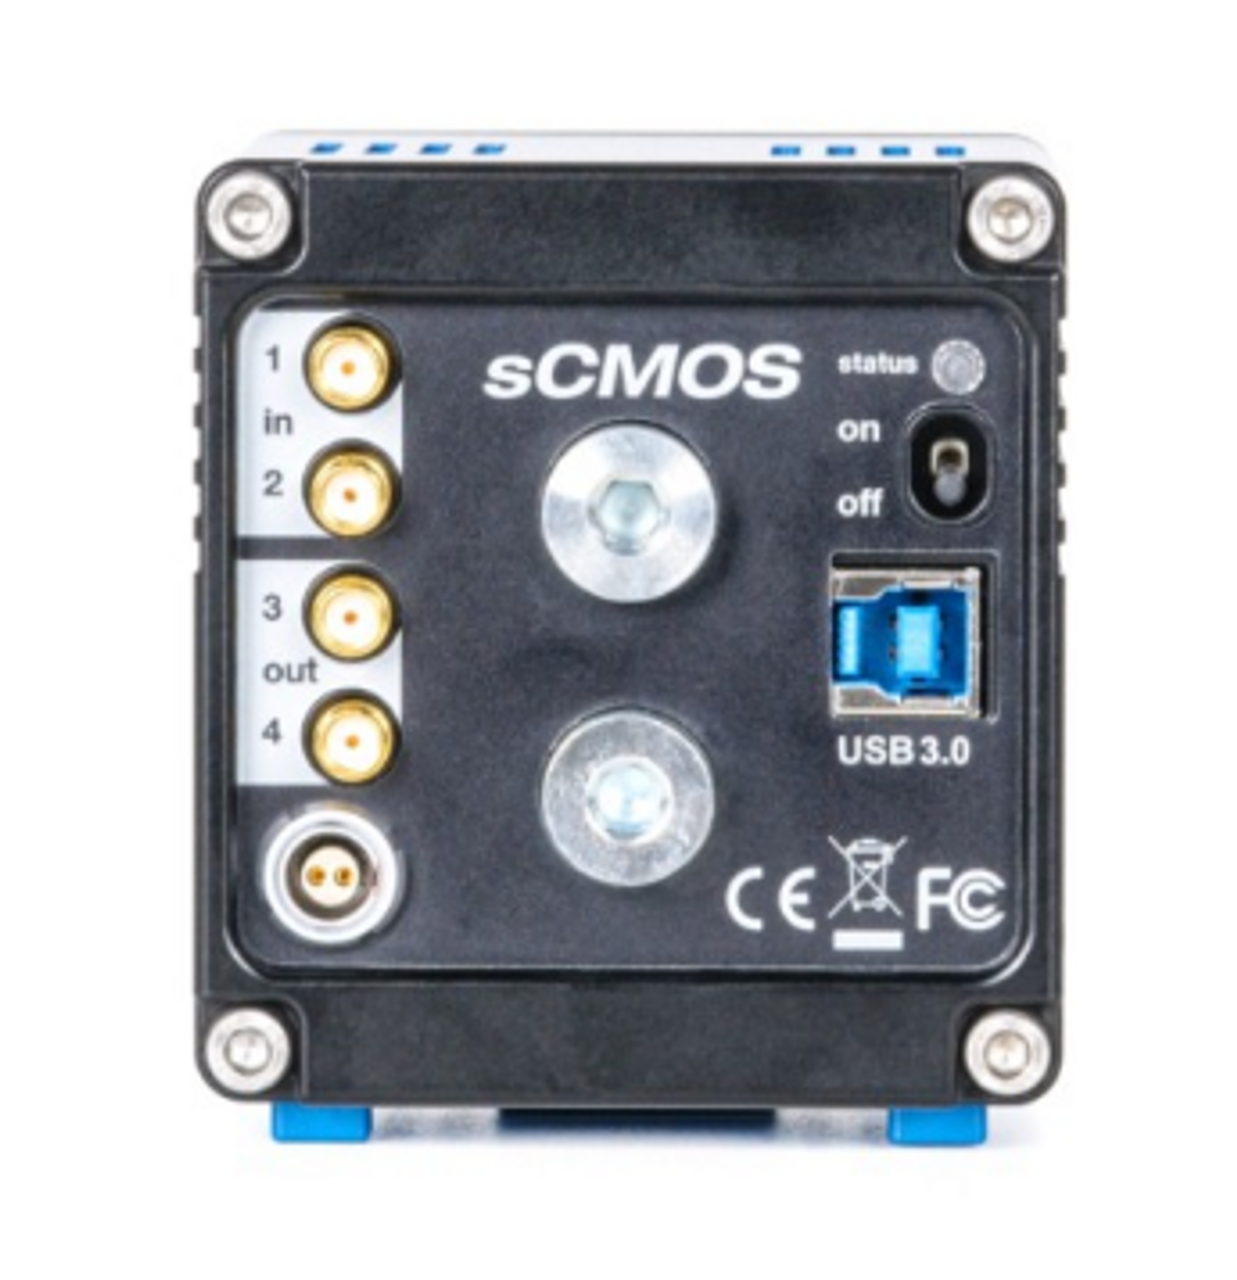 pco.edge 4.2 scientific CMOS camera